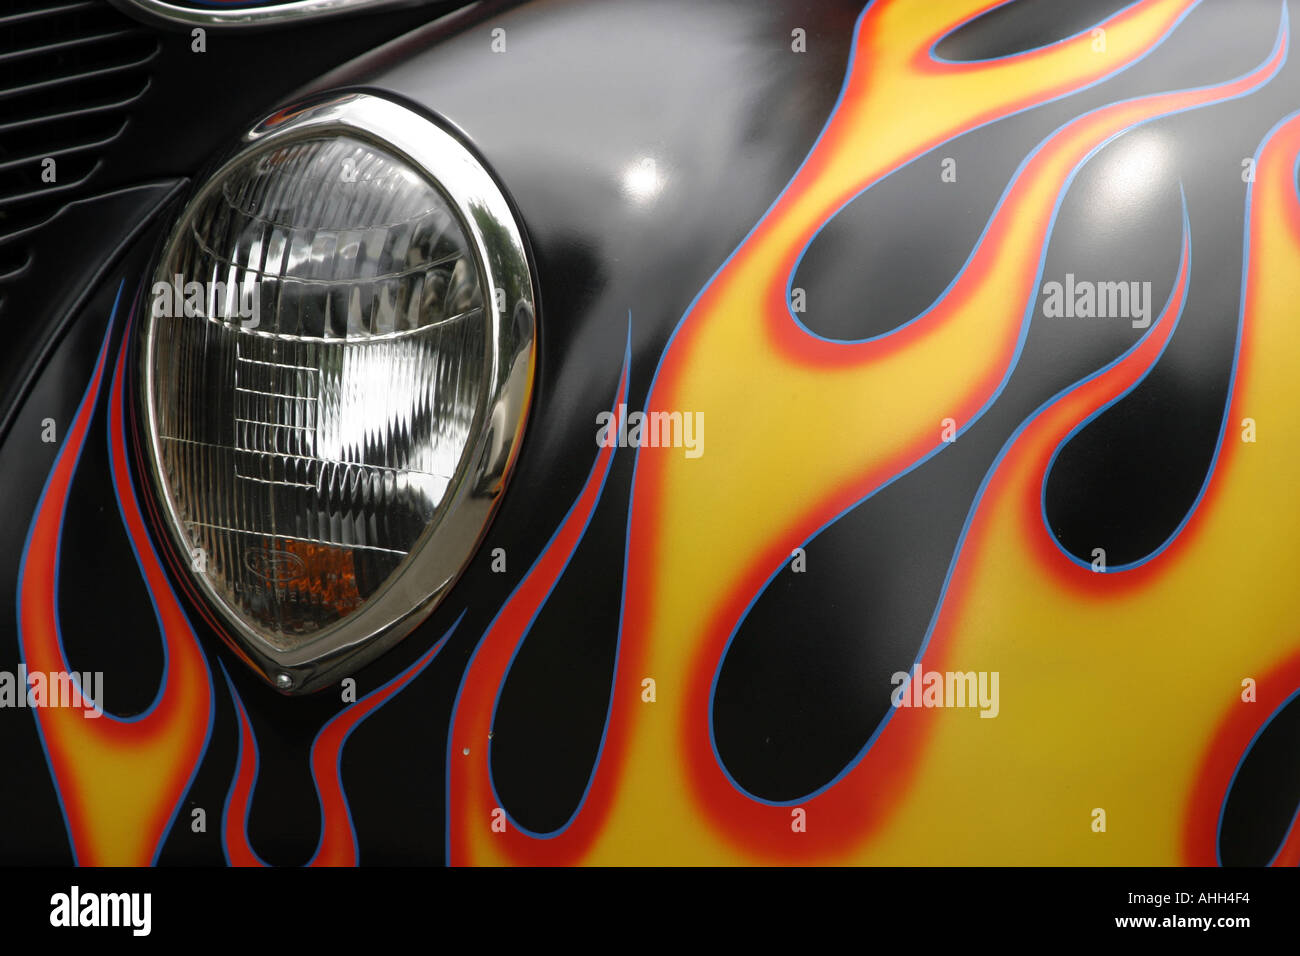 Auto-Kotflügel mit Flammen Stockfotografie - Alamy